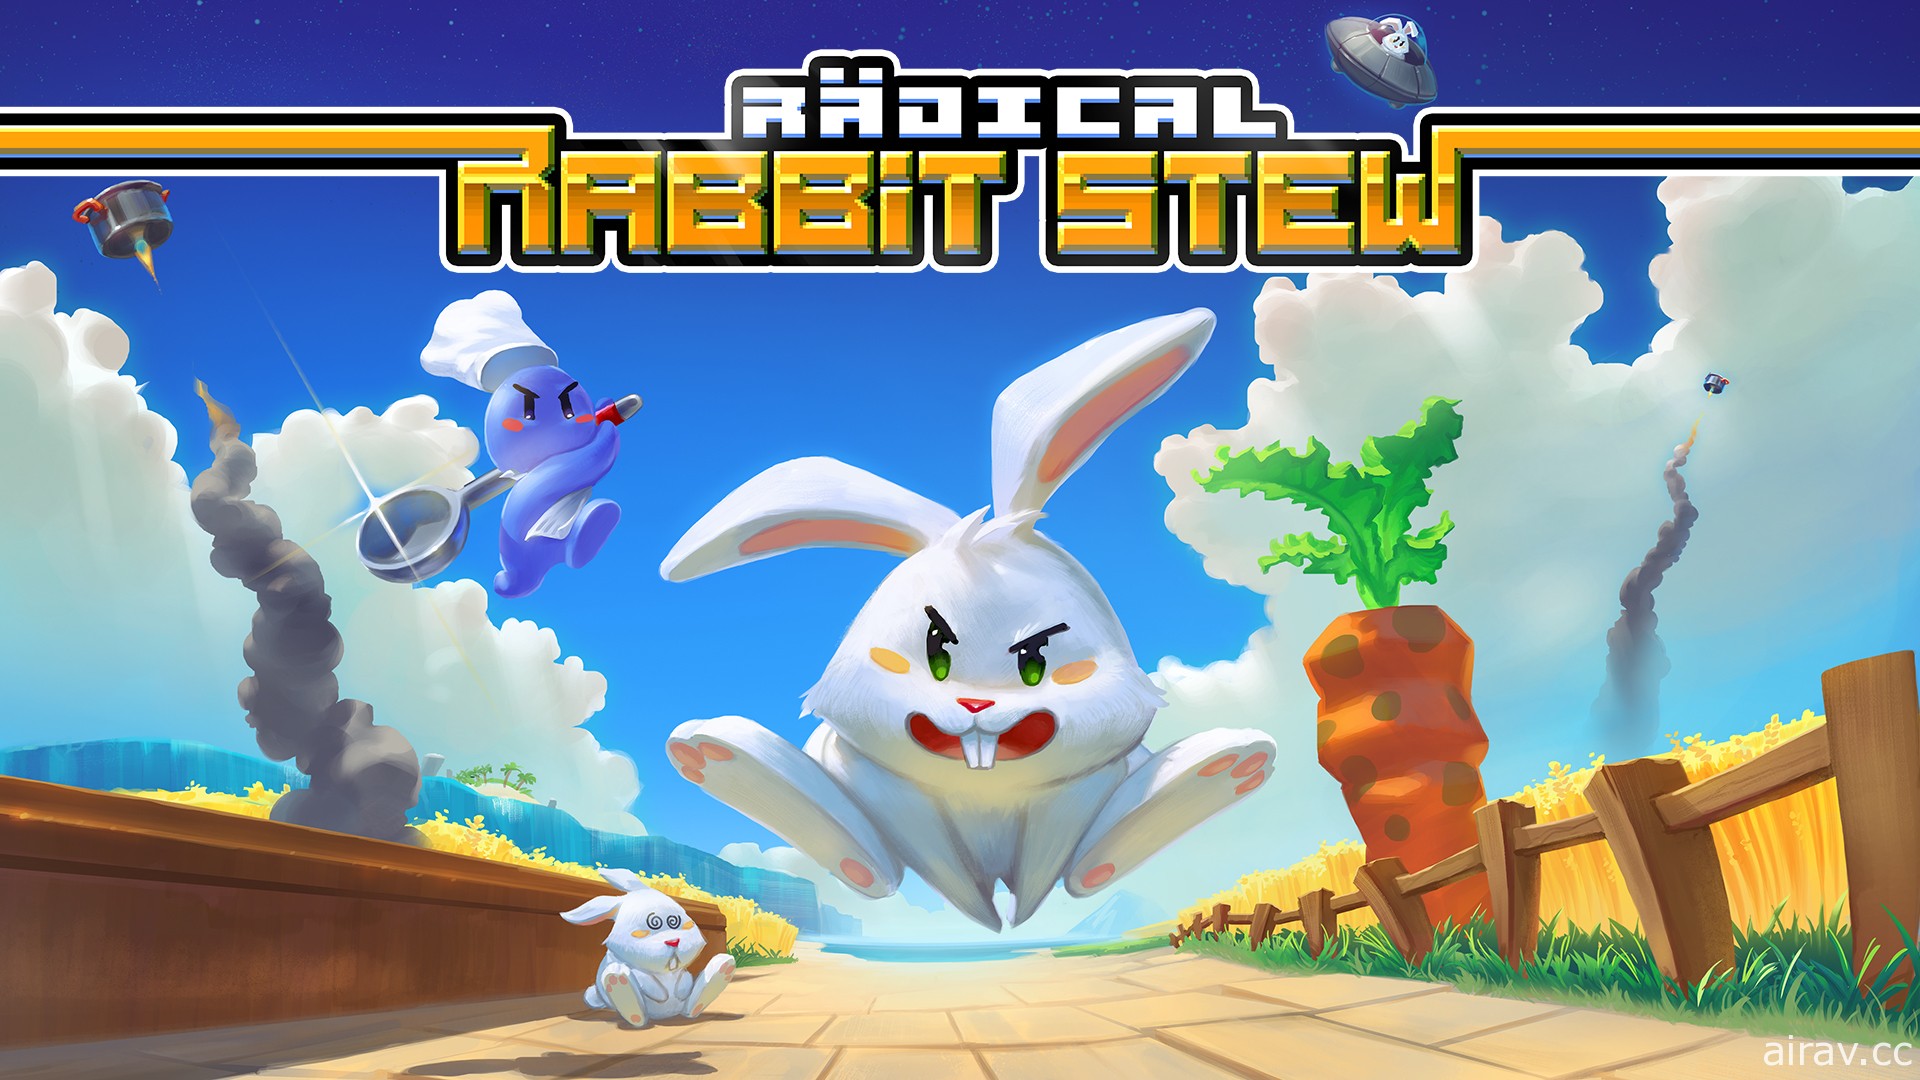 不要吃兔兔！16-bit 風遊戲 《Radical Rabbit Stew》中文數位版 9 月上架